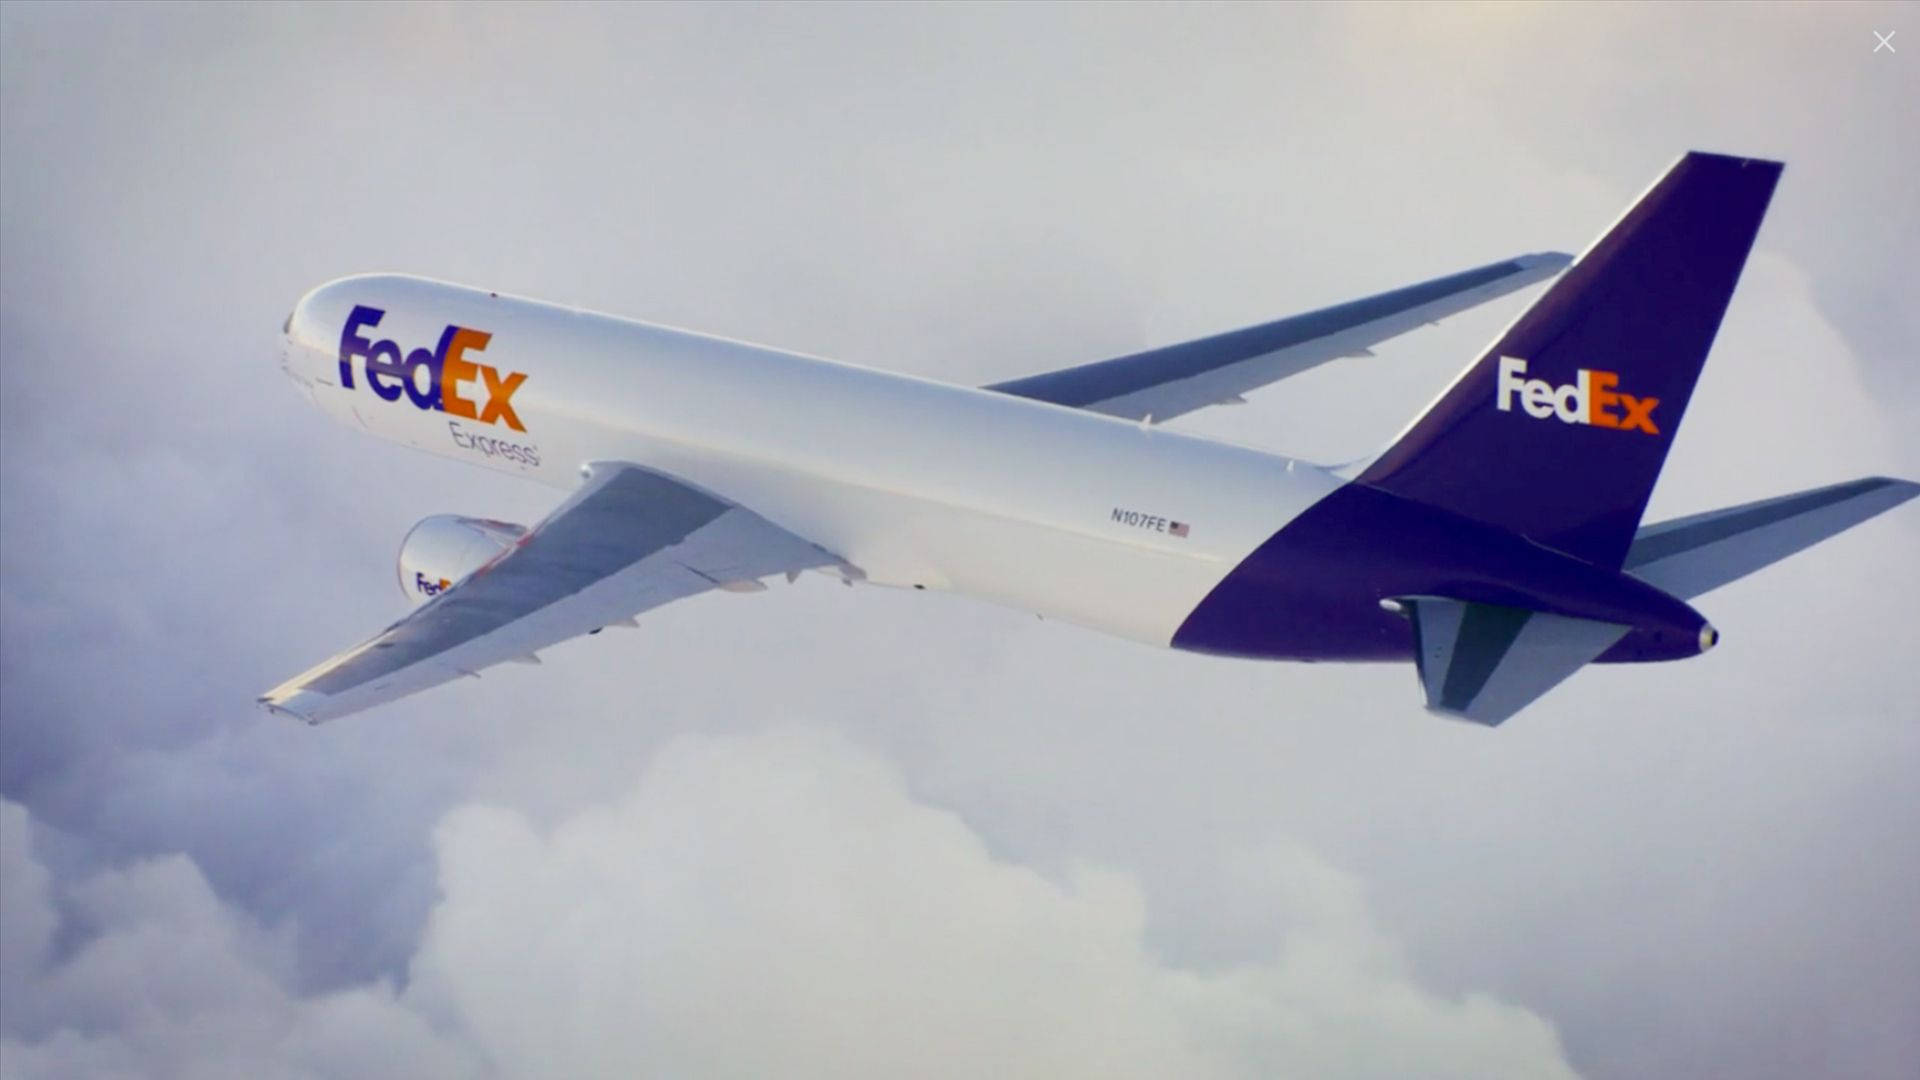 FedEx Express Aircraft Rear View Wallpaper